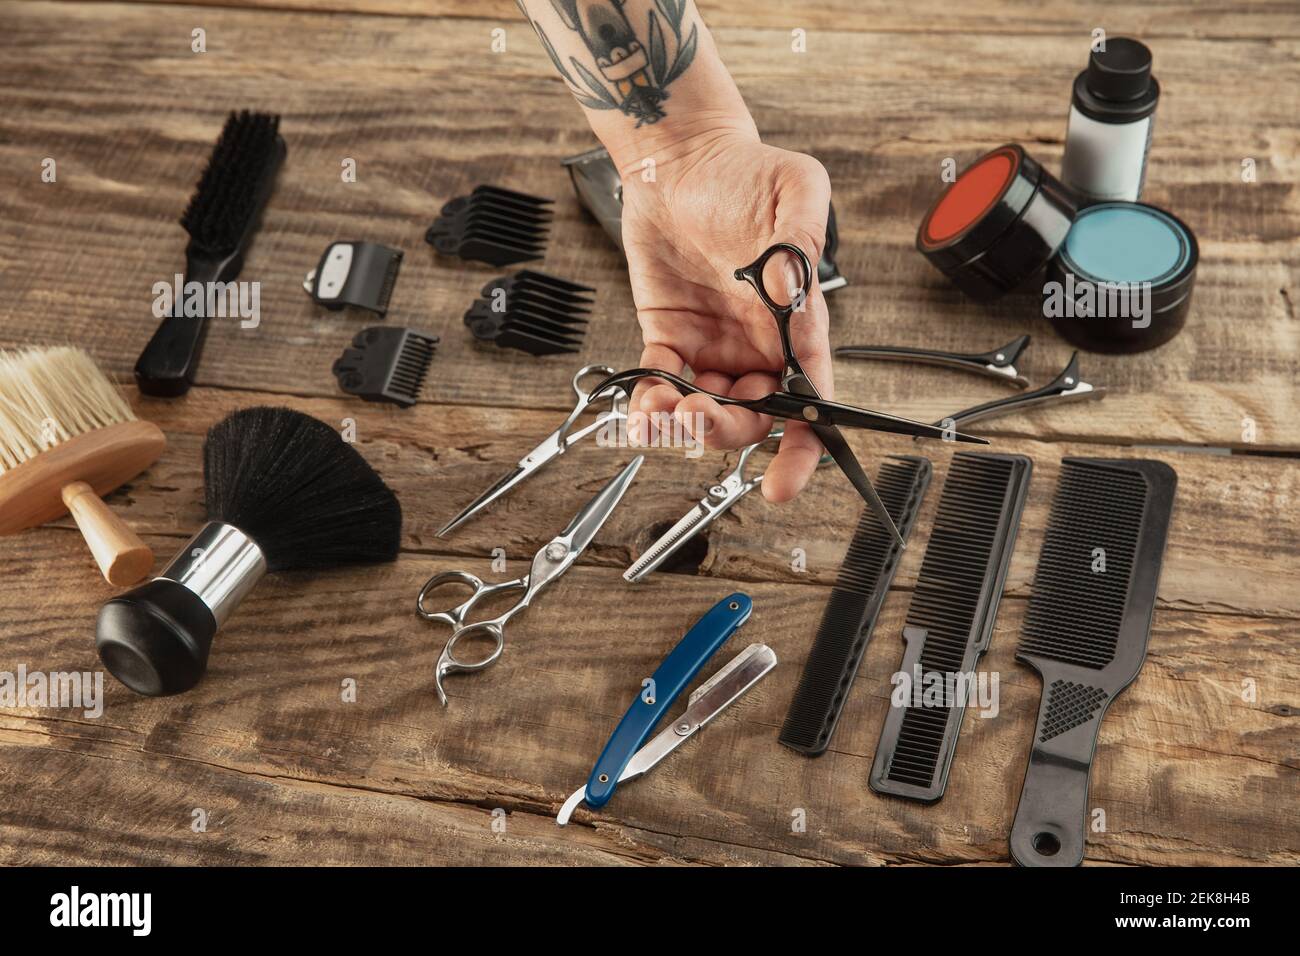 Hairdresser Scissors on Table Stock Image - Image of barber, razor